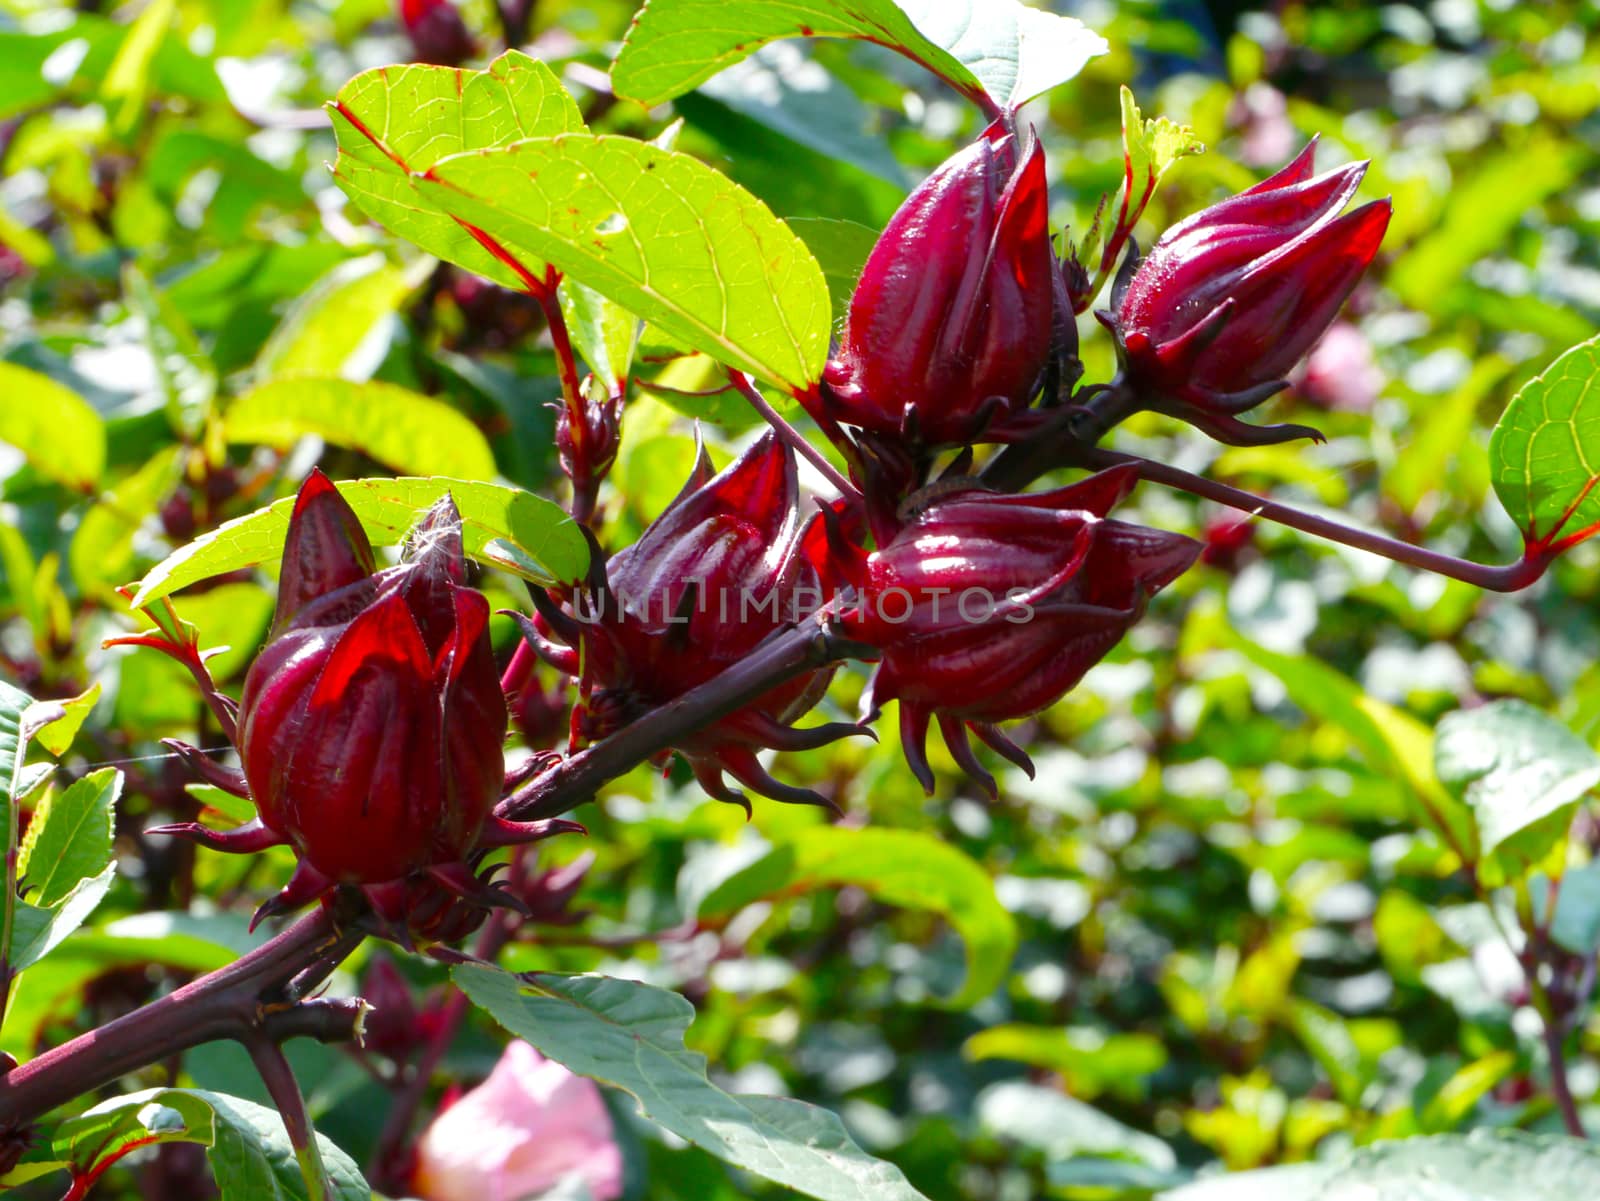 Roselle fruits (Hibiscus sabdariffa L.), Thailand